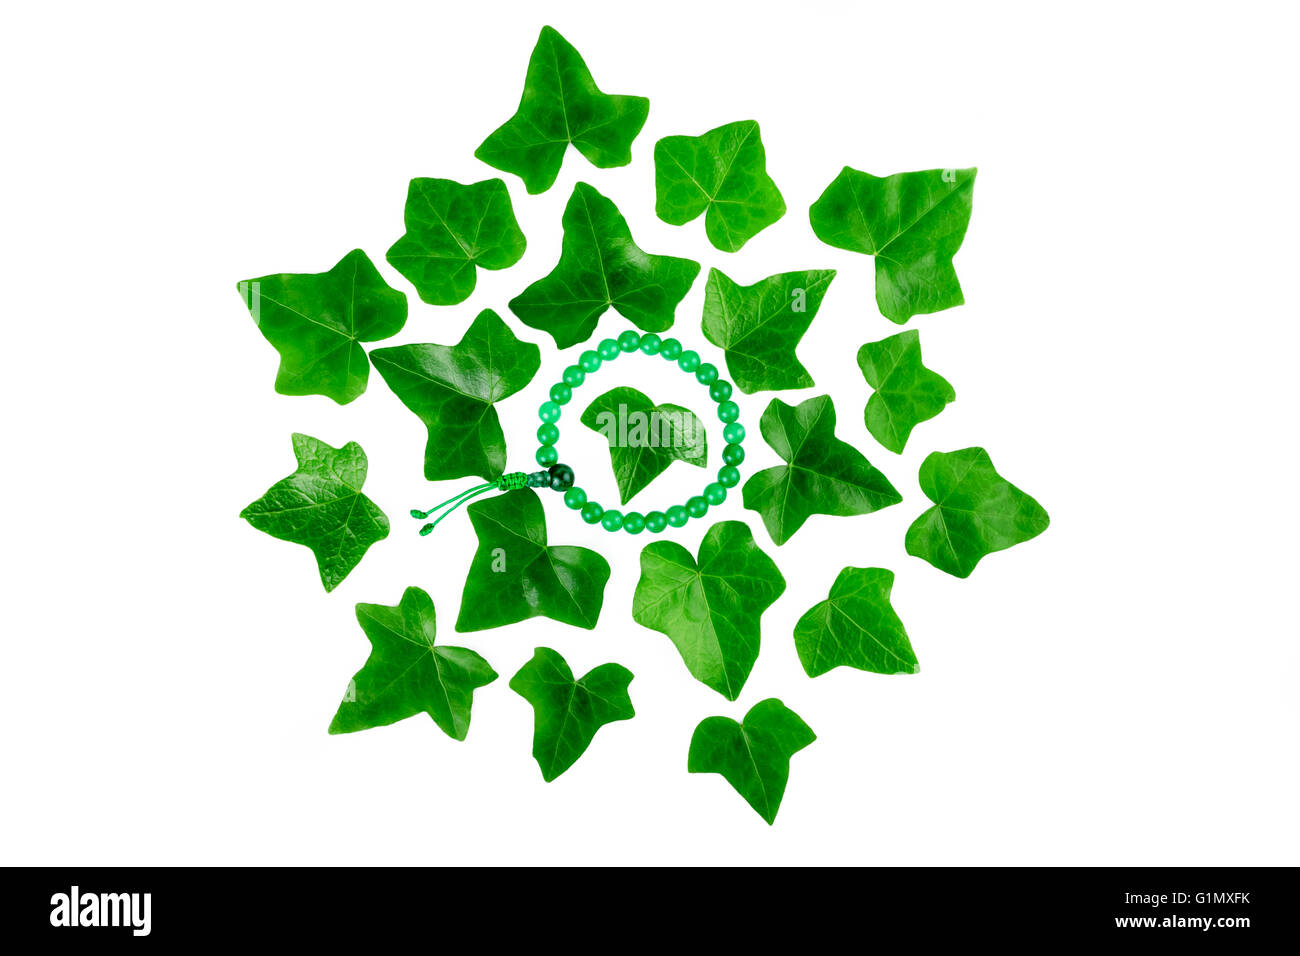 Configuration des feuilles de lierre vert plante avec bracelet mala sur fond blanc. Mise à plat, vue du dessus. Banque D'Images